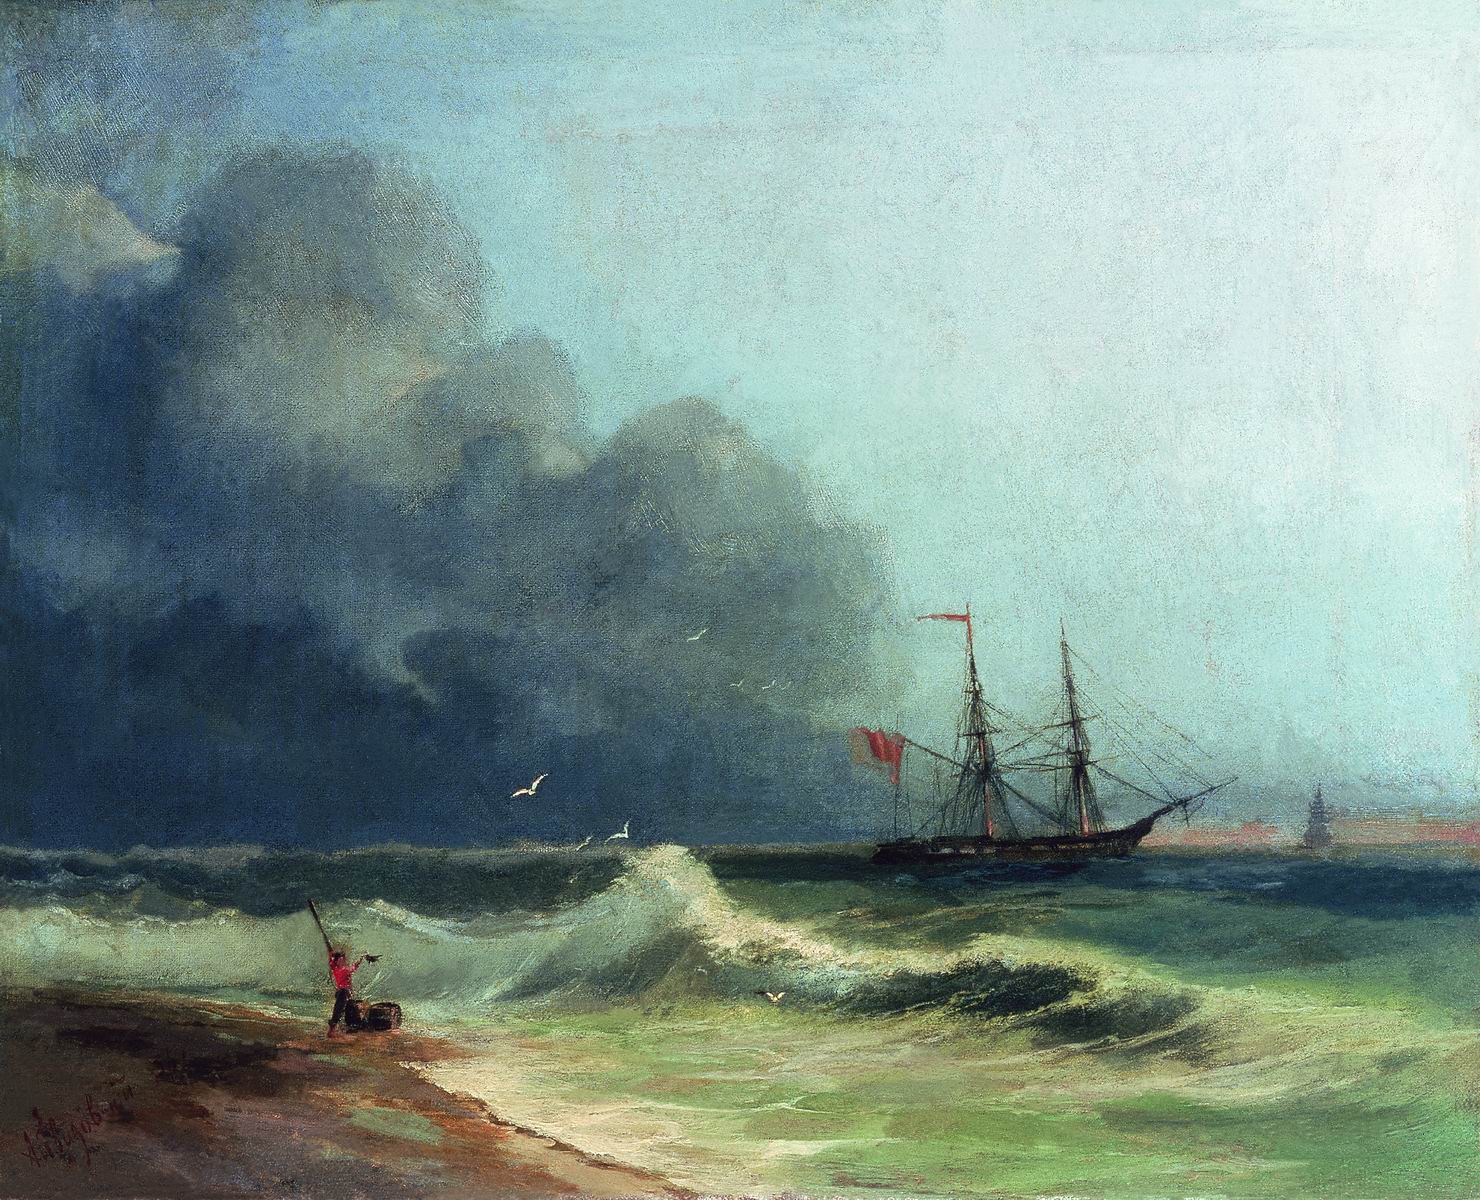 Айвазовский. Море перед бурей. 1856